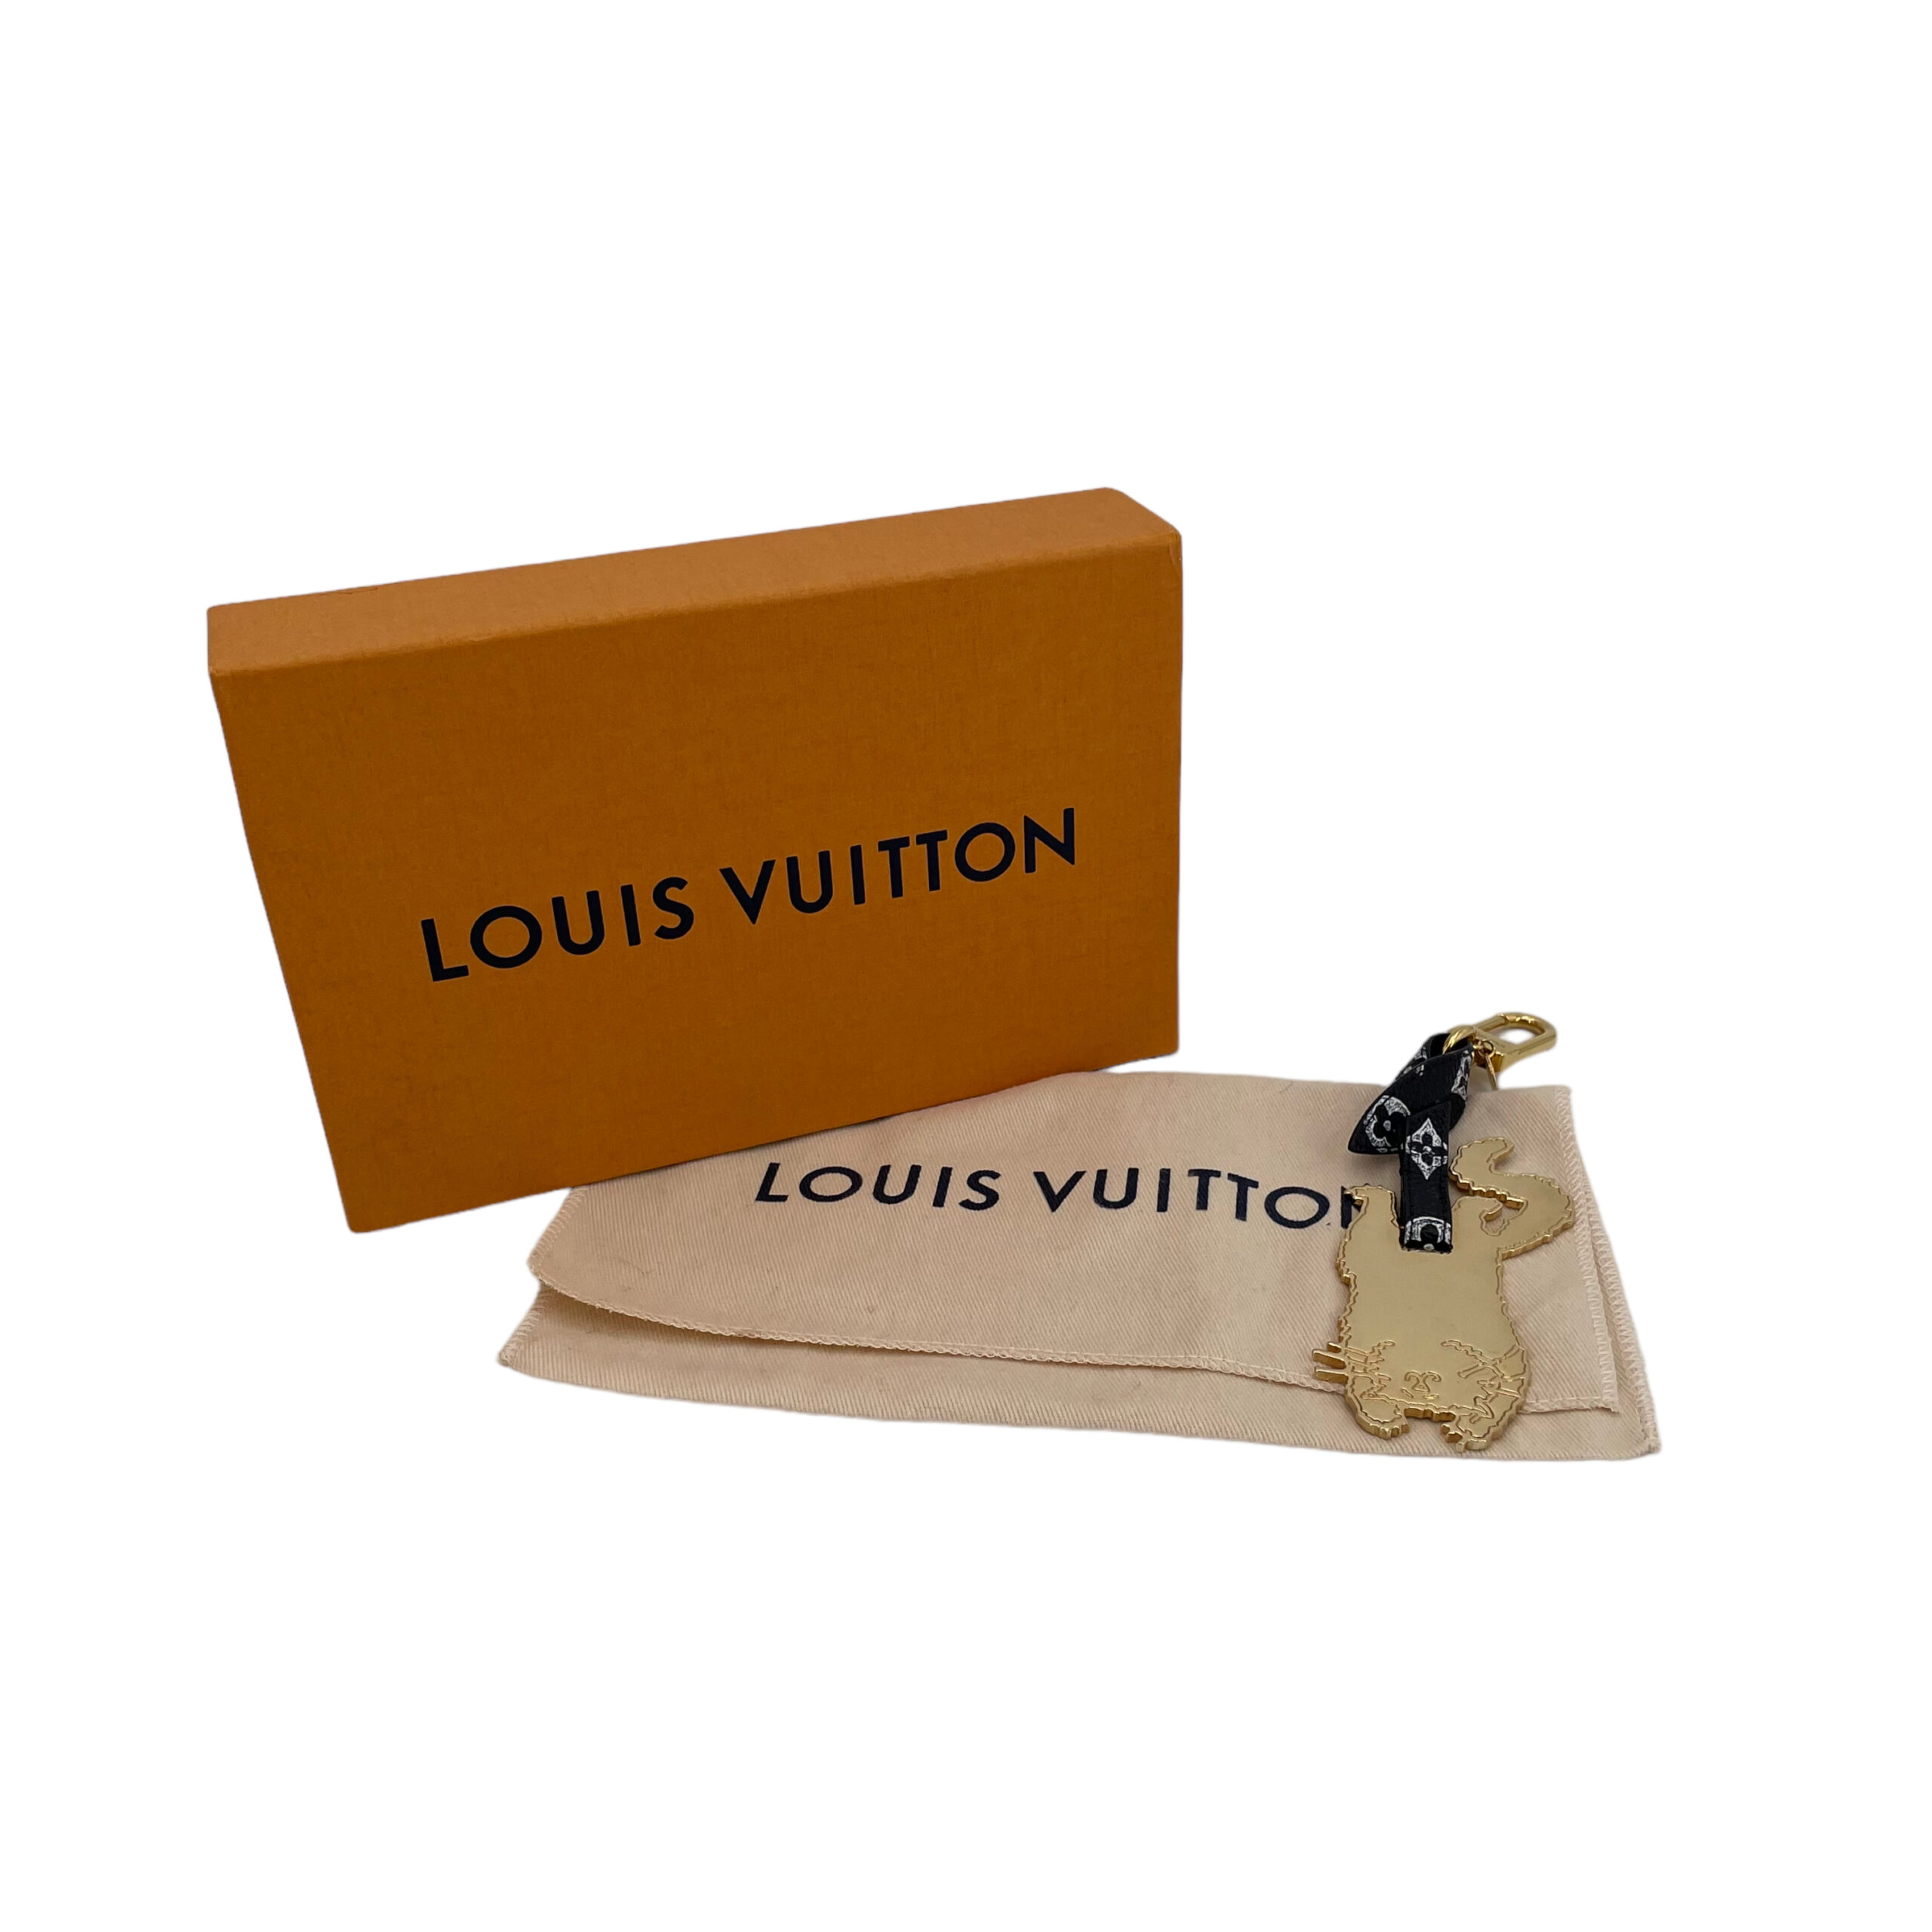 Louis Vuitton Catogram Cat Grace Coddington Keychain Bag Charm